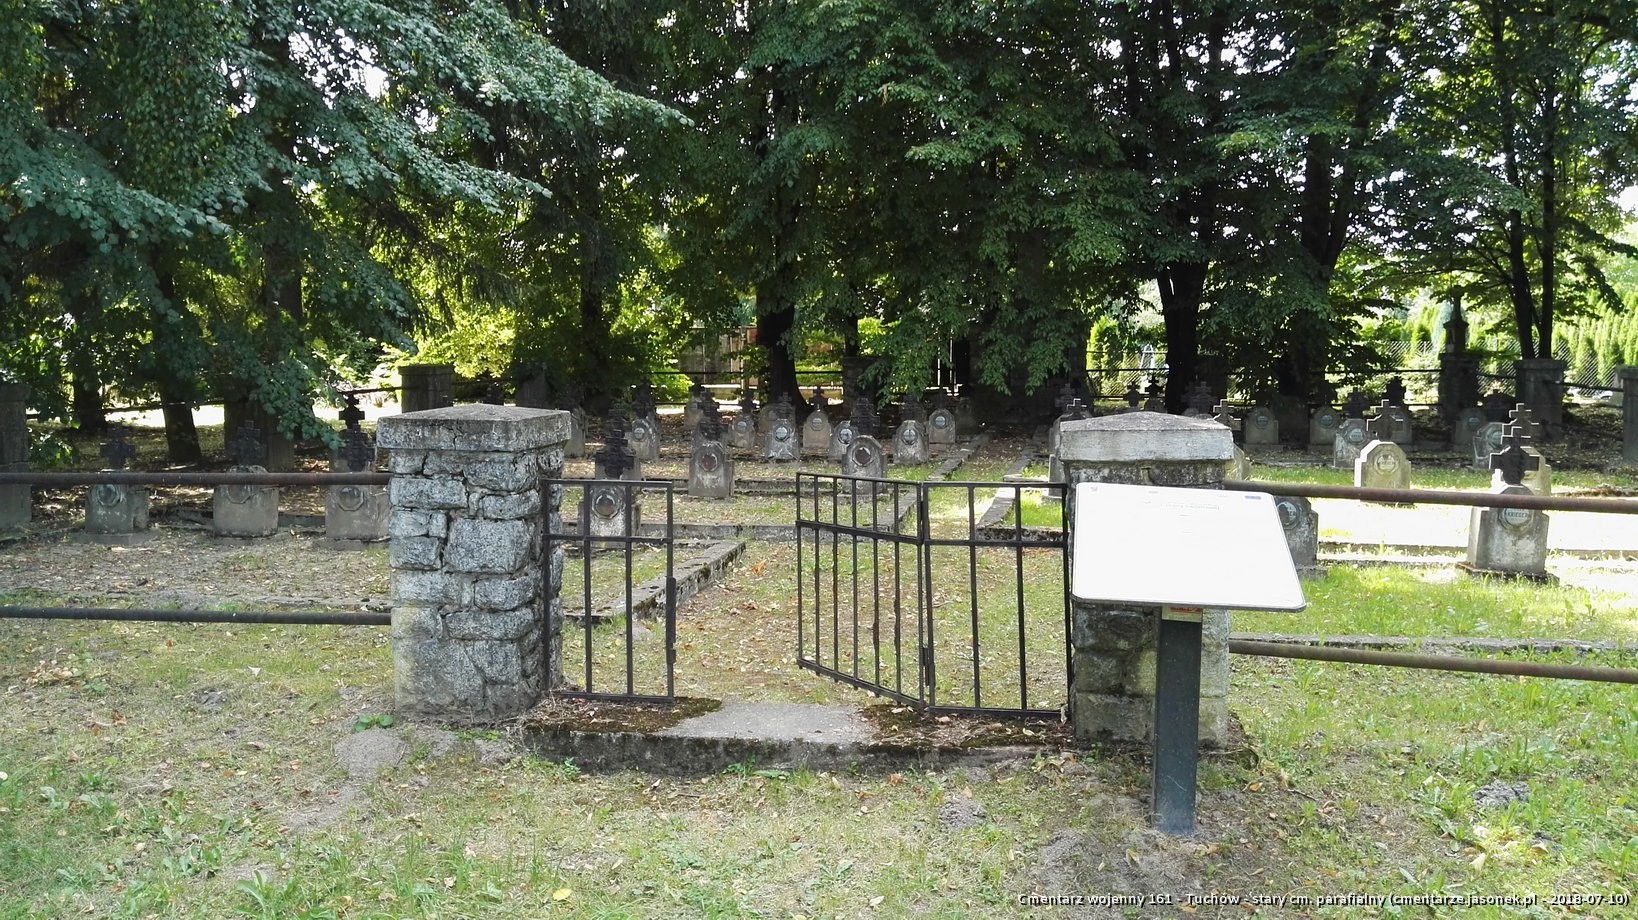 Cmentarz wojenny 161 - Tuchów - stary cm. parafialny